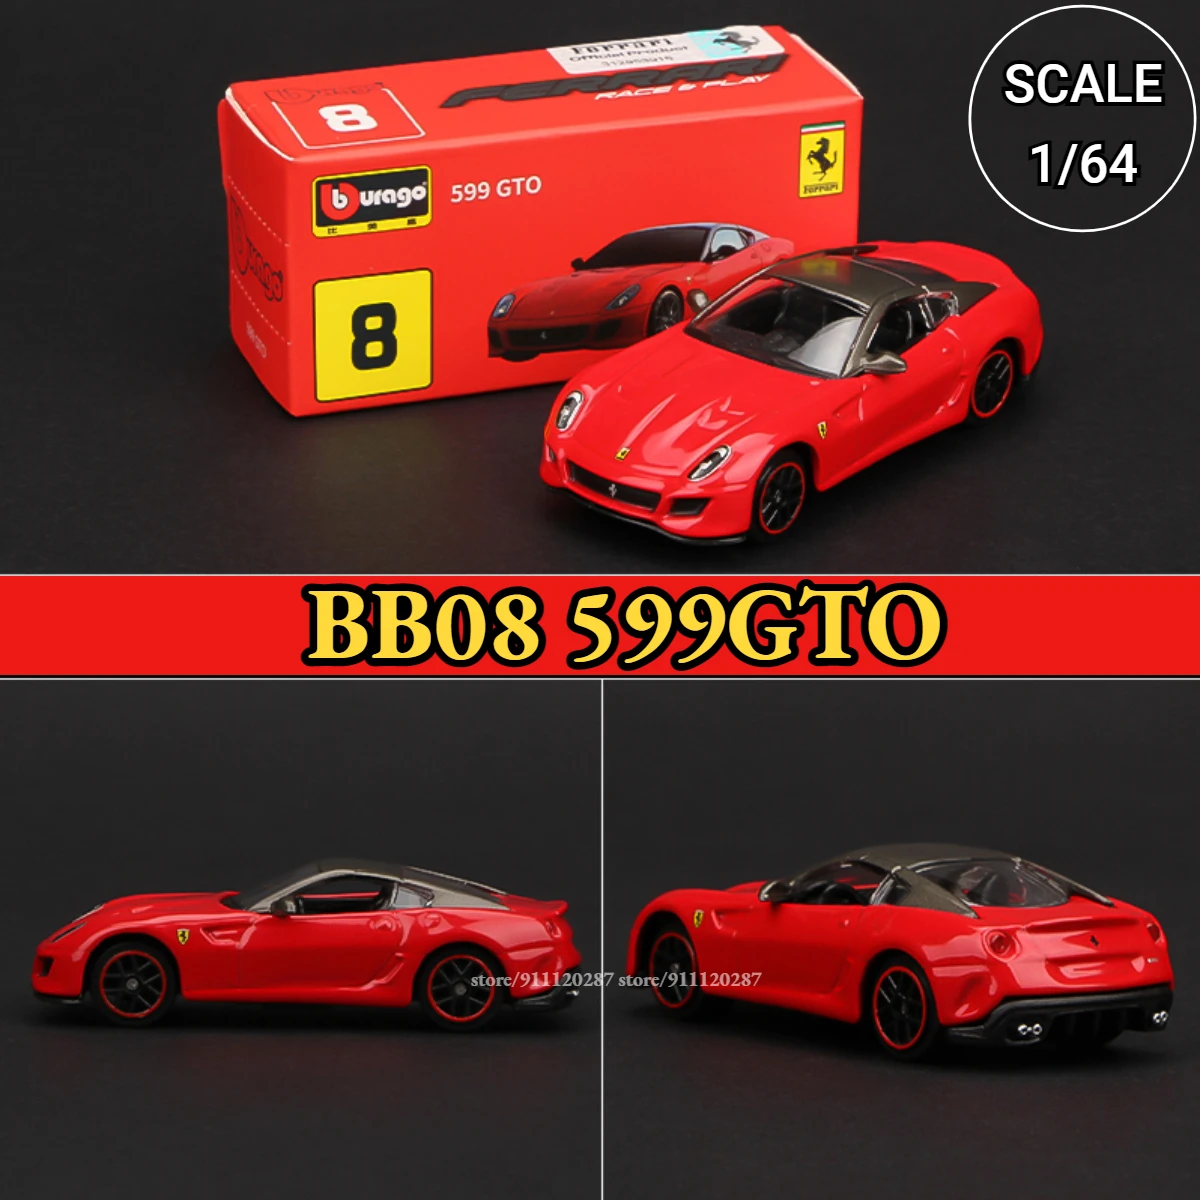 

Миниатюрная модель Автомобиля Ferrari Bburago 1:64, модель BB08 599GTO F12tdf F40 F50 458 488 GTB паук, литый под давлением